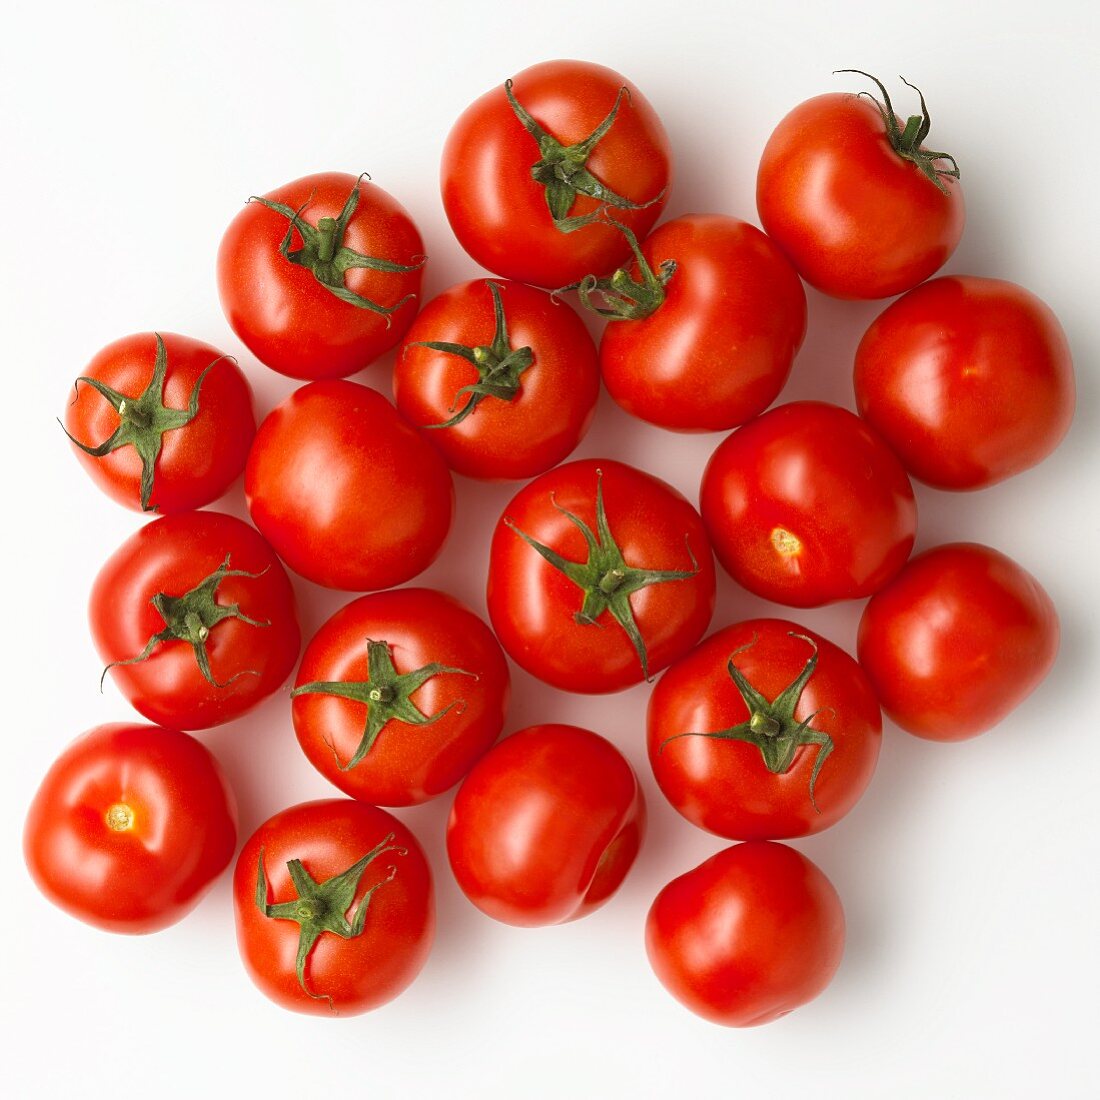 Mehrere Tomaten auf weißem Untergrund (Aufsicht)